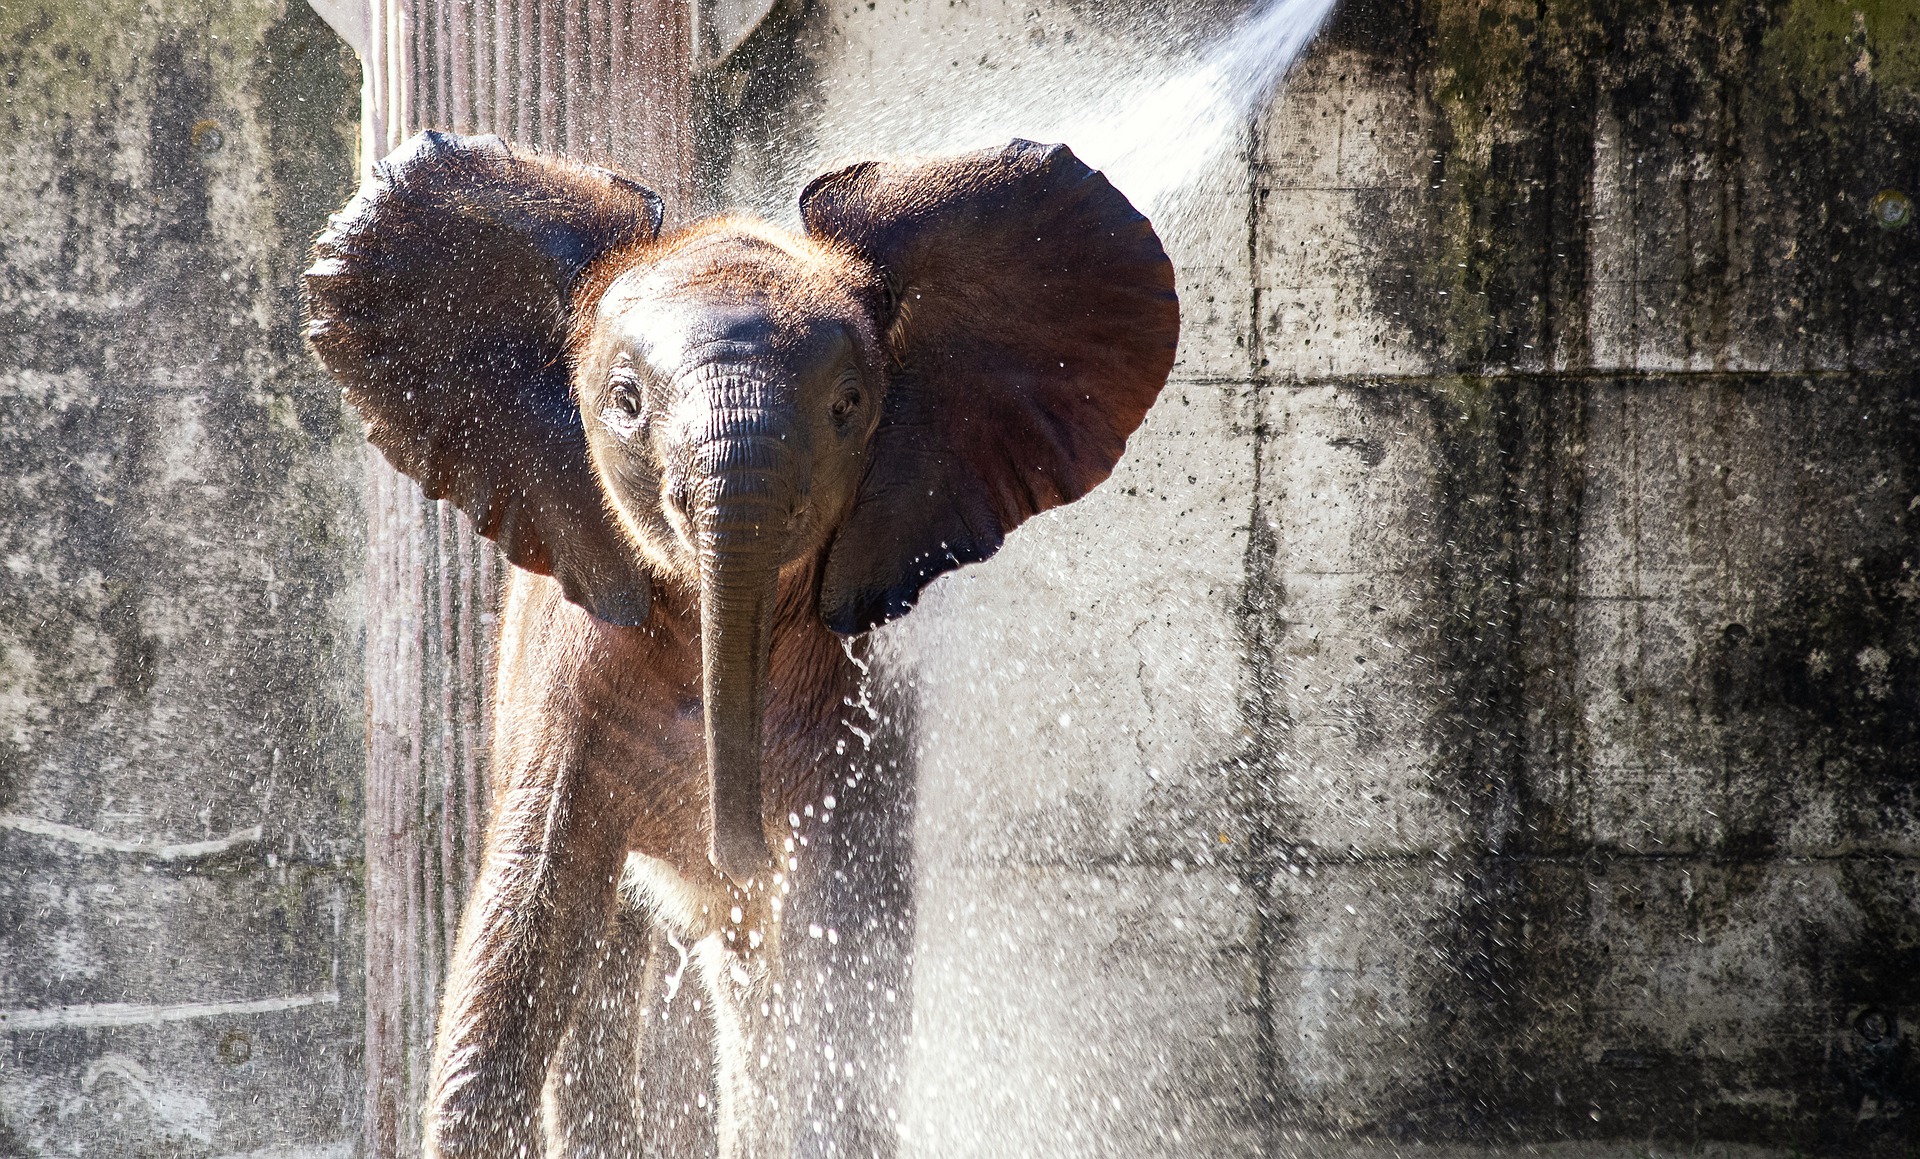 Elefant duscht unter fließendem Wasser